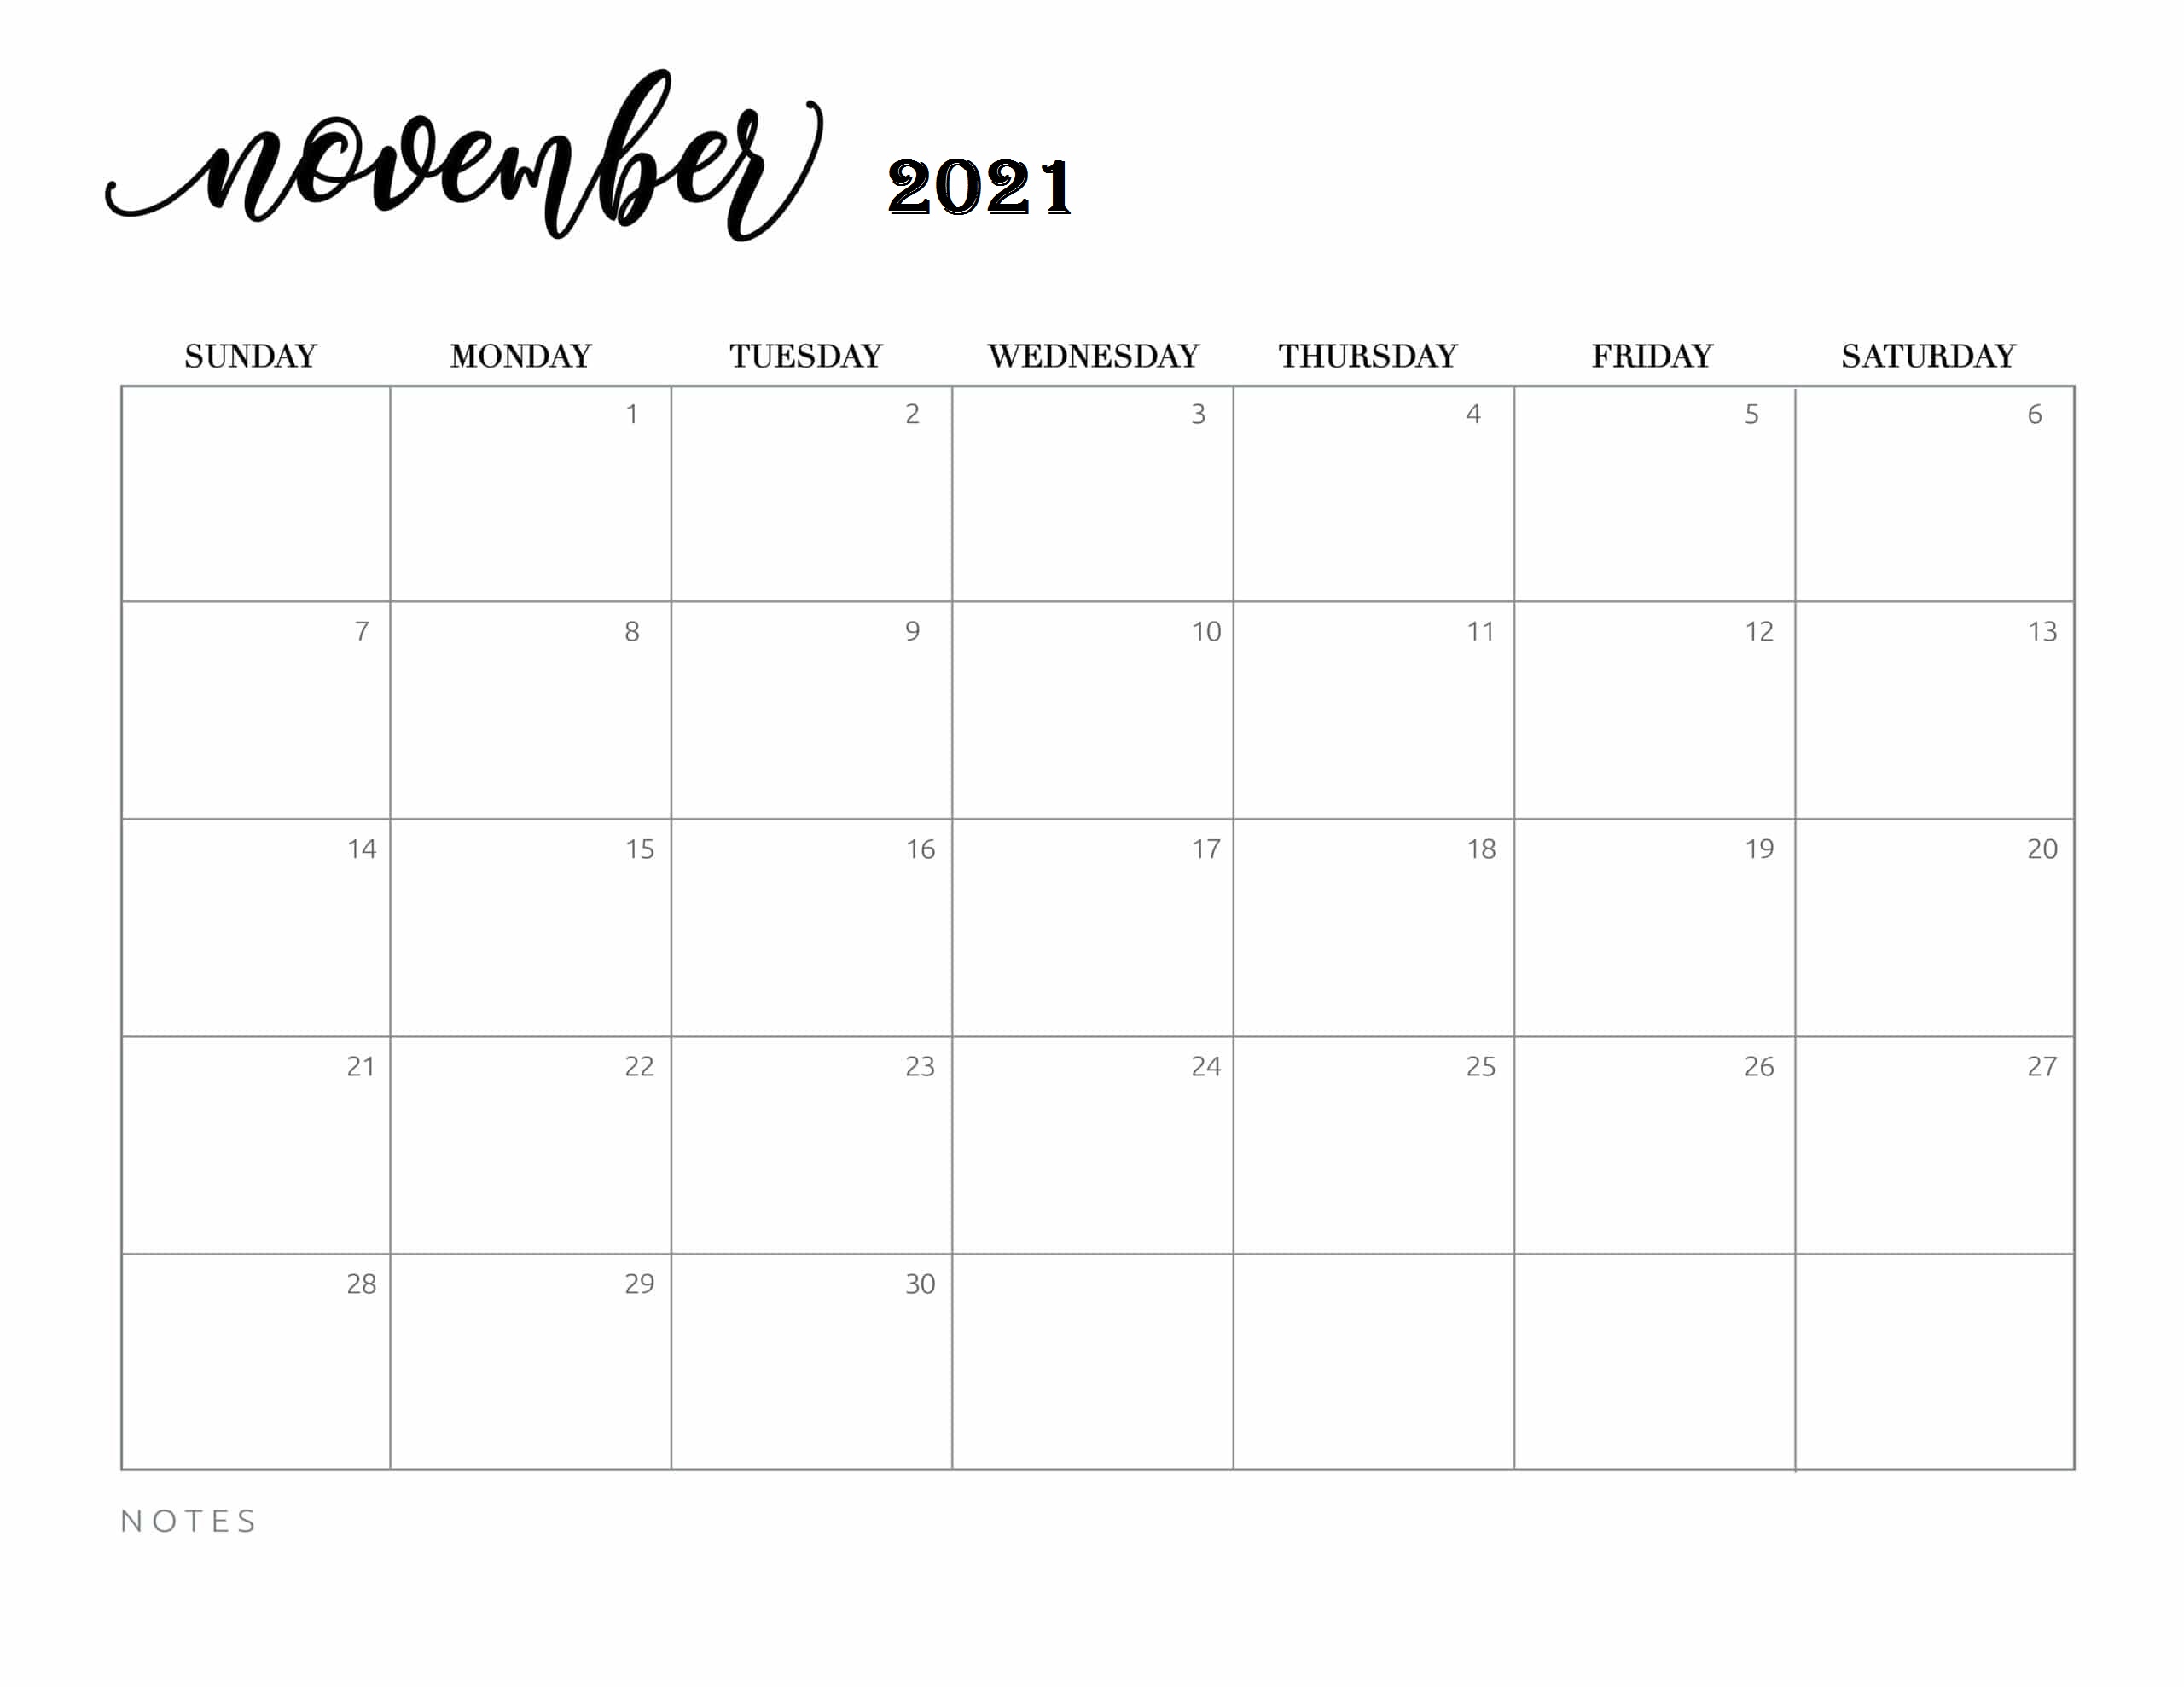 November 2021 Calendar With Festivals